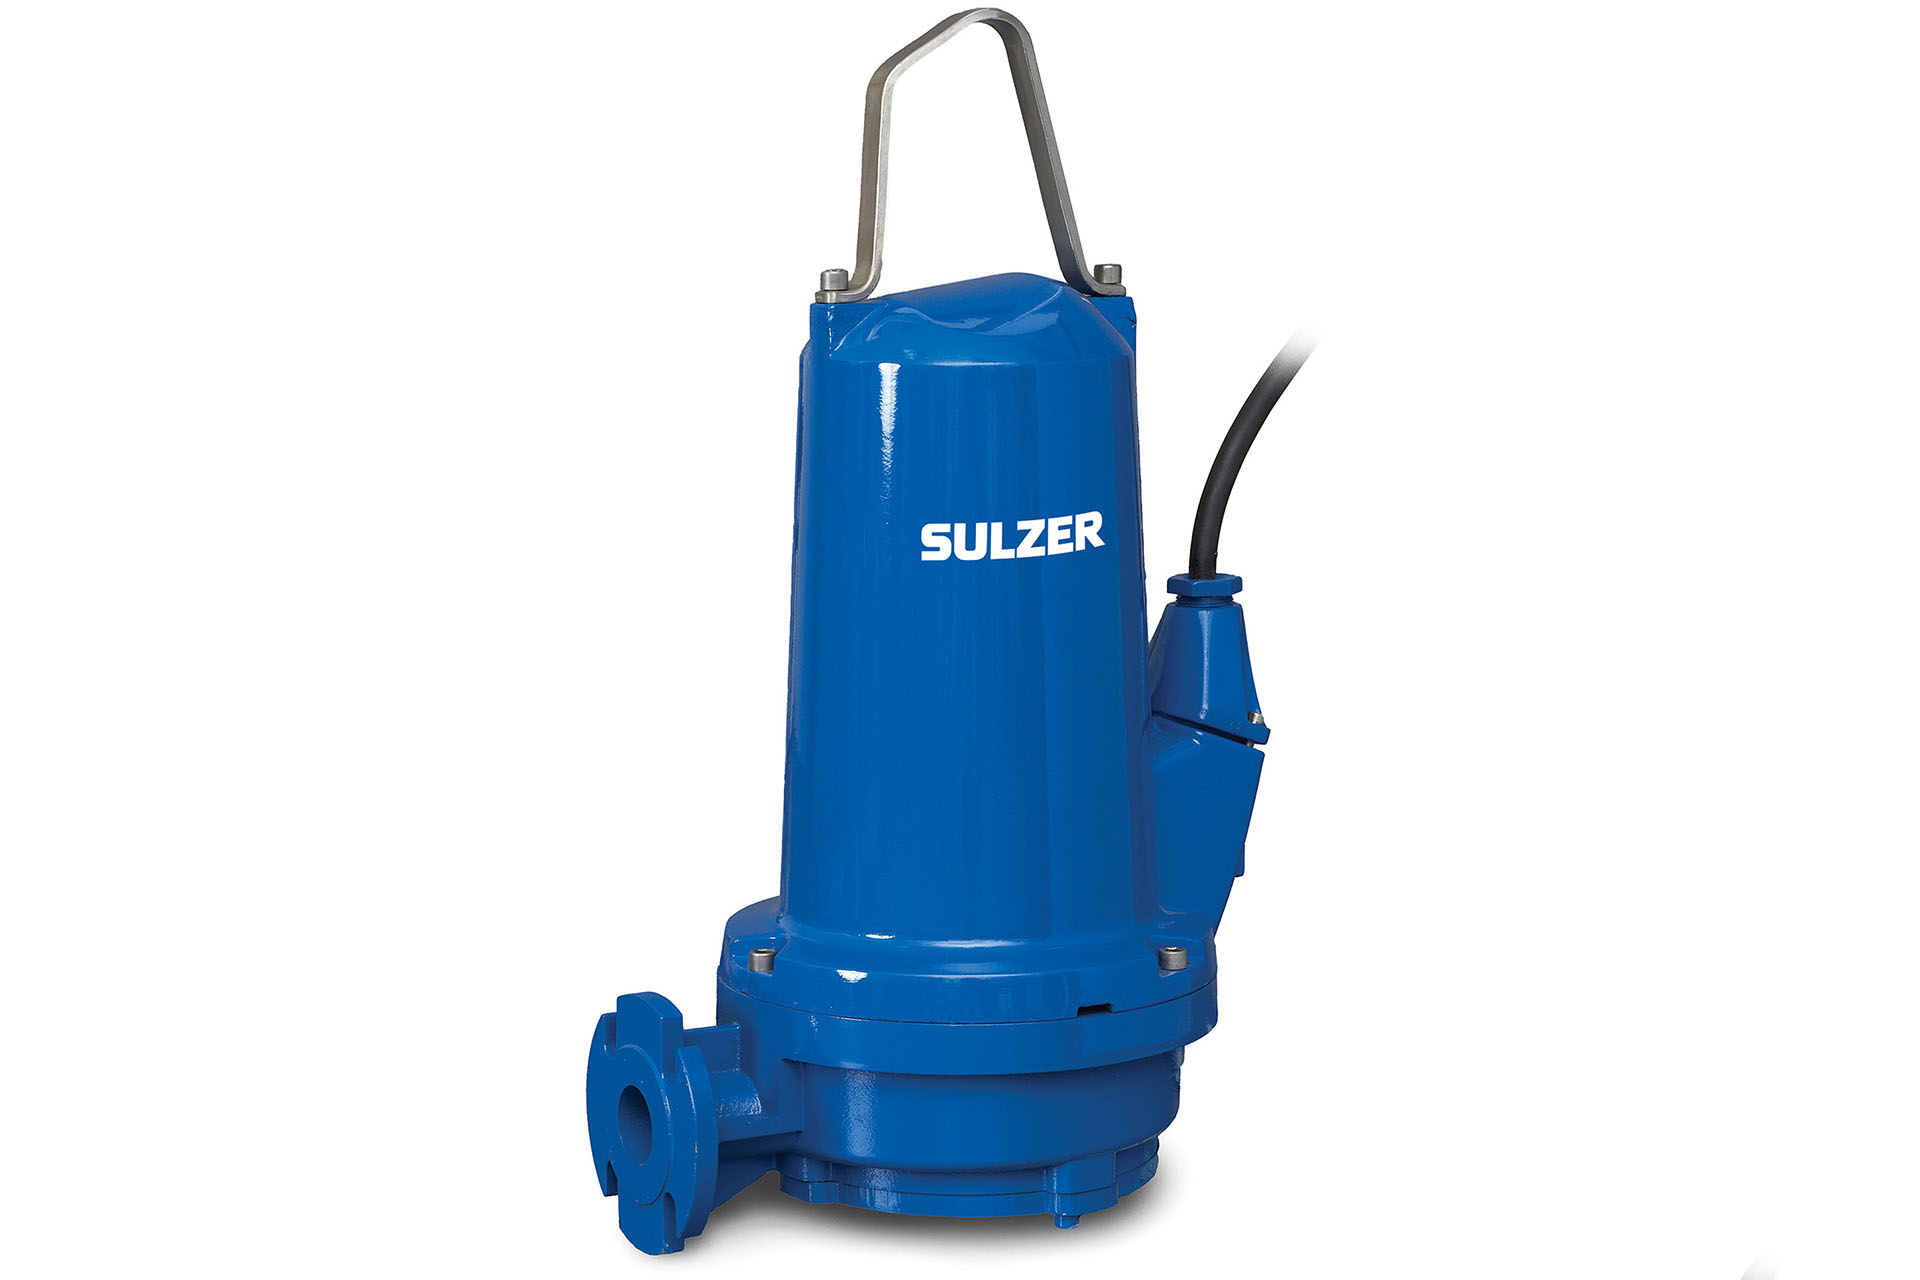 SULZER S20/2D.02 ABS Piranha Submersible Waste Water Pump 41.8GPM D640425